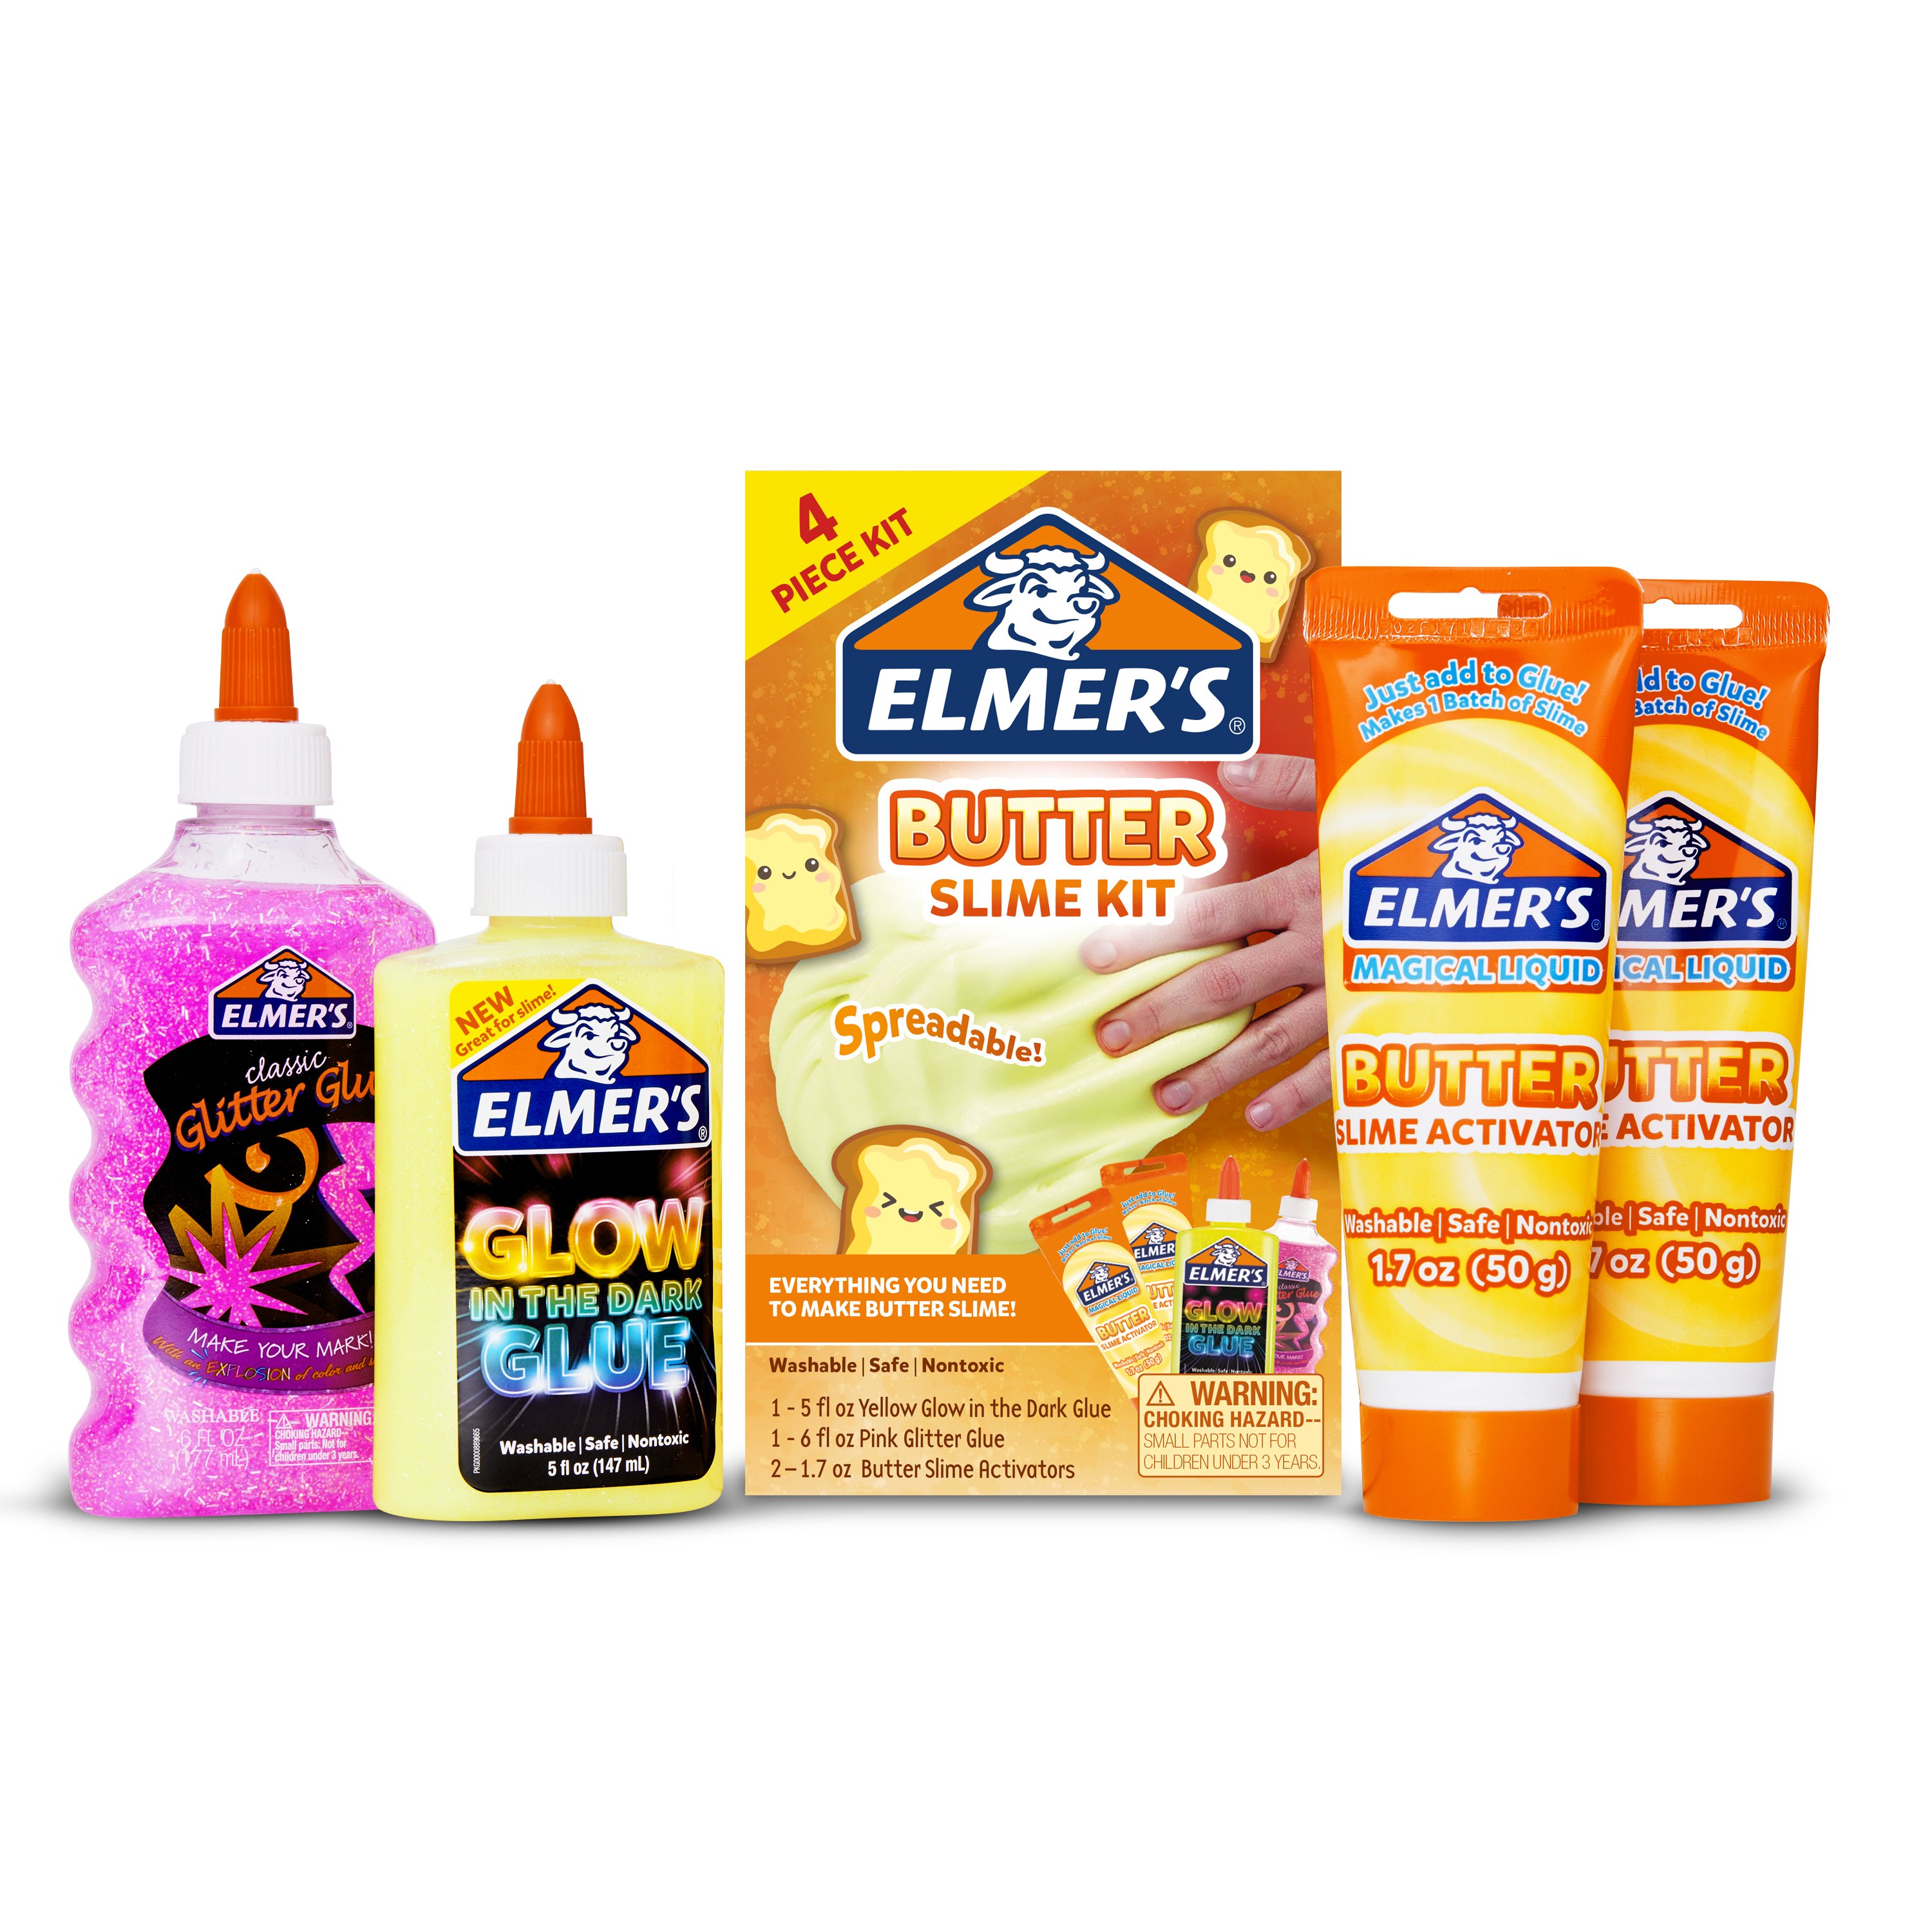 Elmers Glue, Glow in the Dark Glue, Glue for Slime, Glitter Glue, Orange  Glue, Kids Crafts 